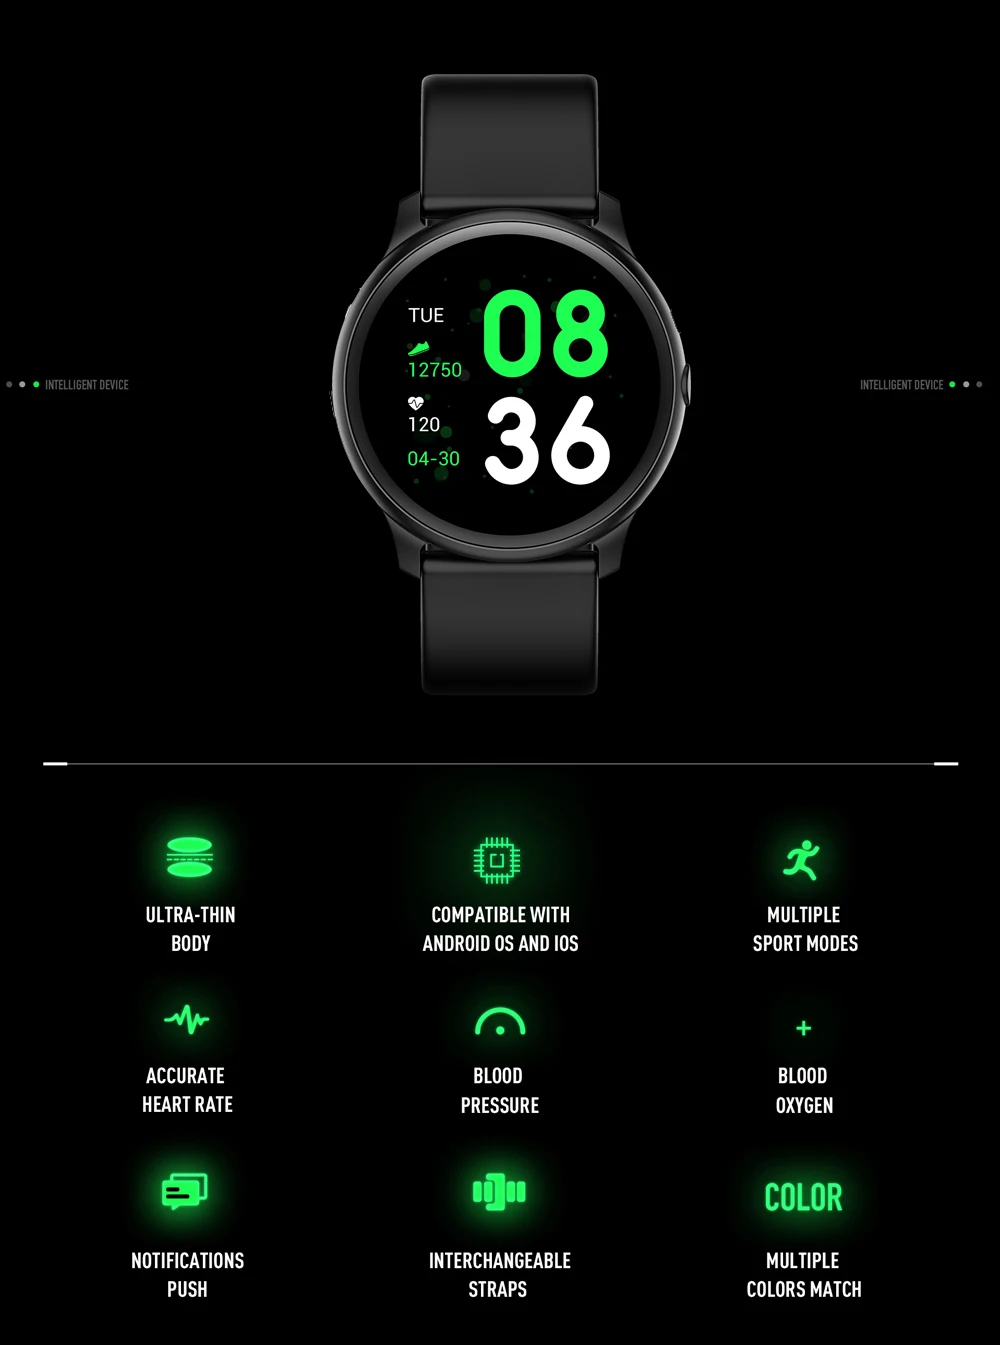 Новые DT88 Смарт-часы IP68 Водонепроницаемые носимые устройства монитор сердечного ритма спортивные Смарт-часы для Android IOS длительное время ожидания